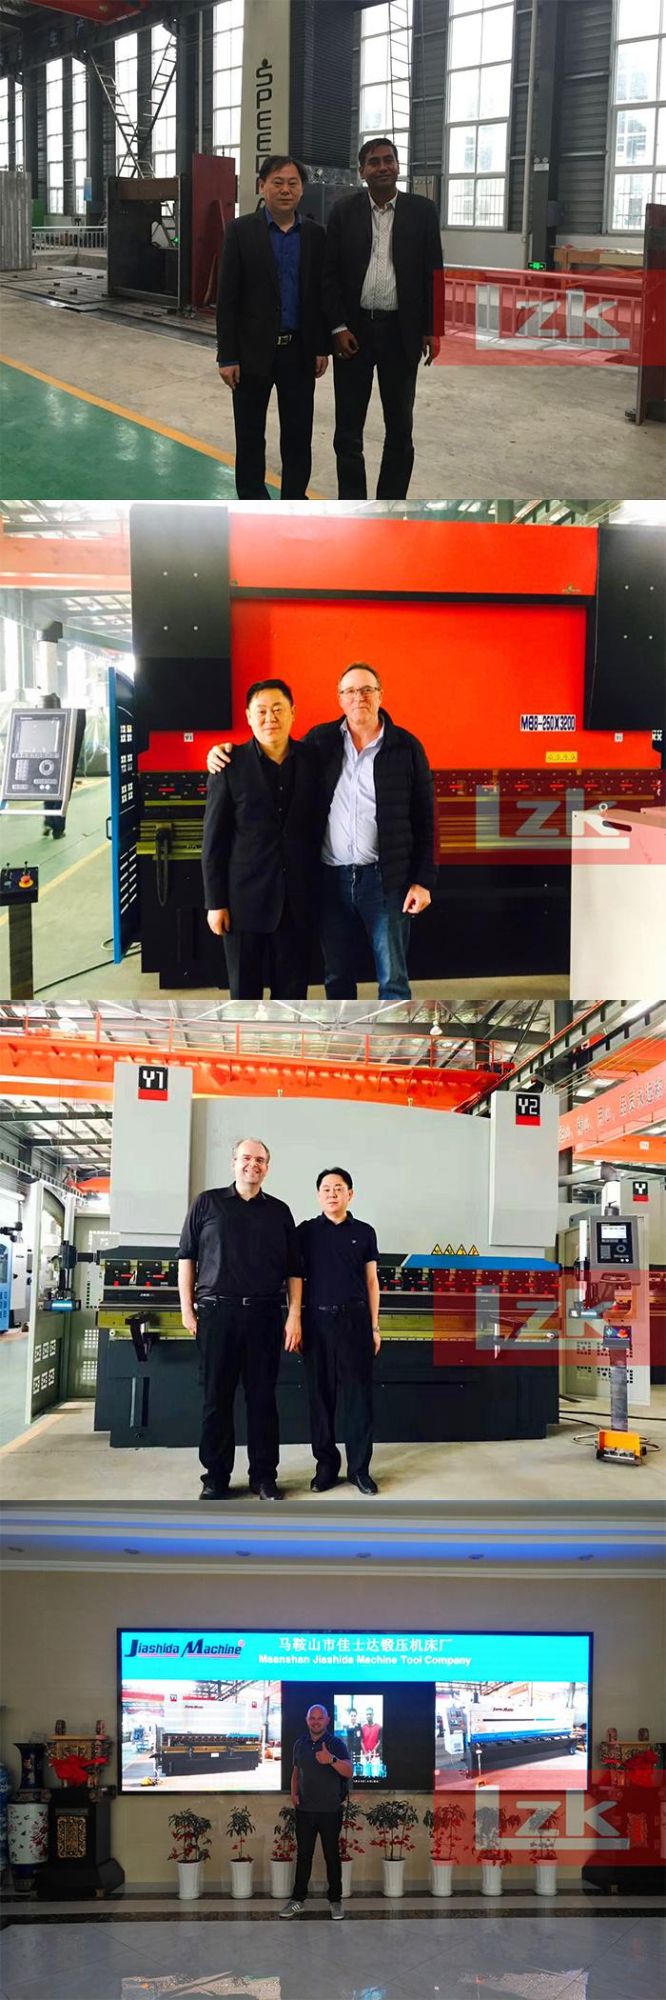 China Press Brake Manufactures Lzk